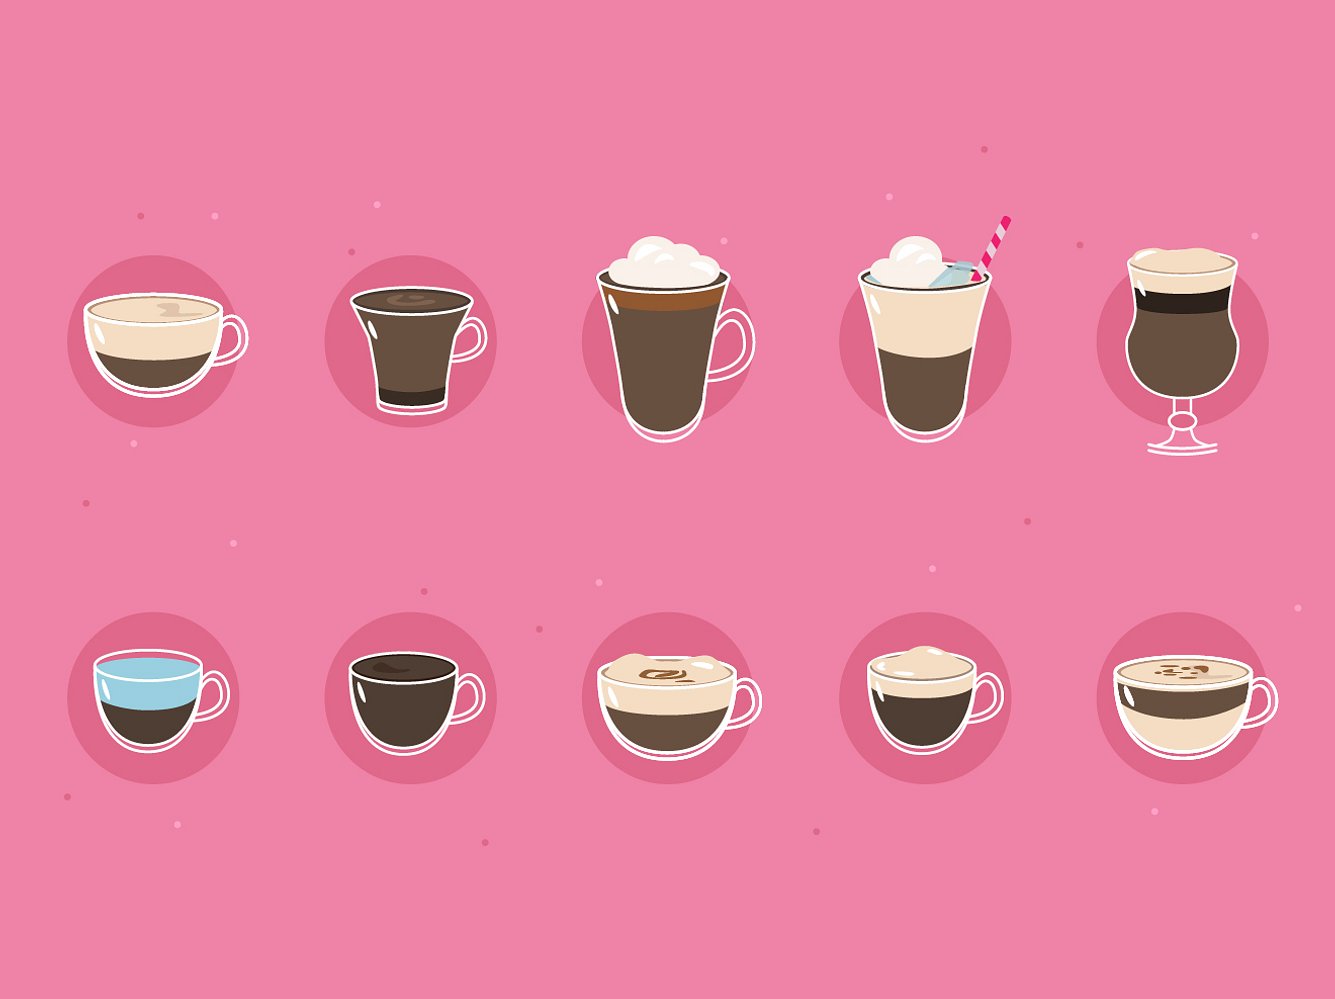 Diese Kaffeespezialitäten stellen wir euch vor.